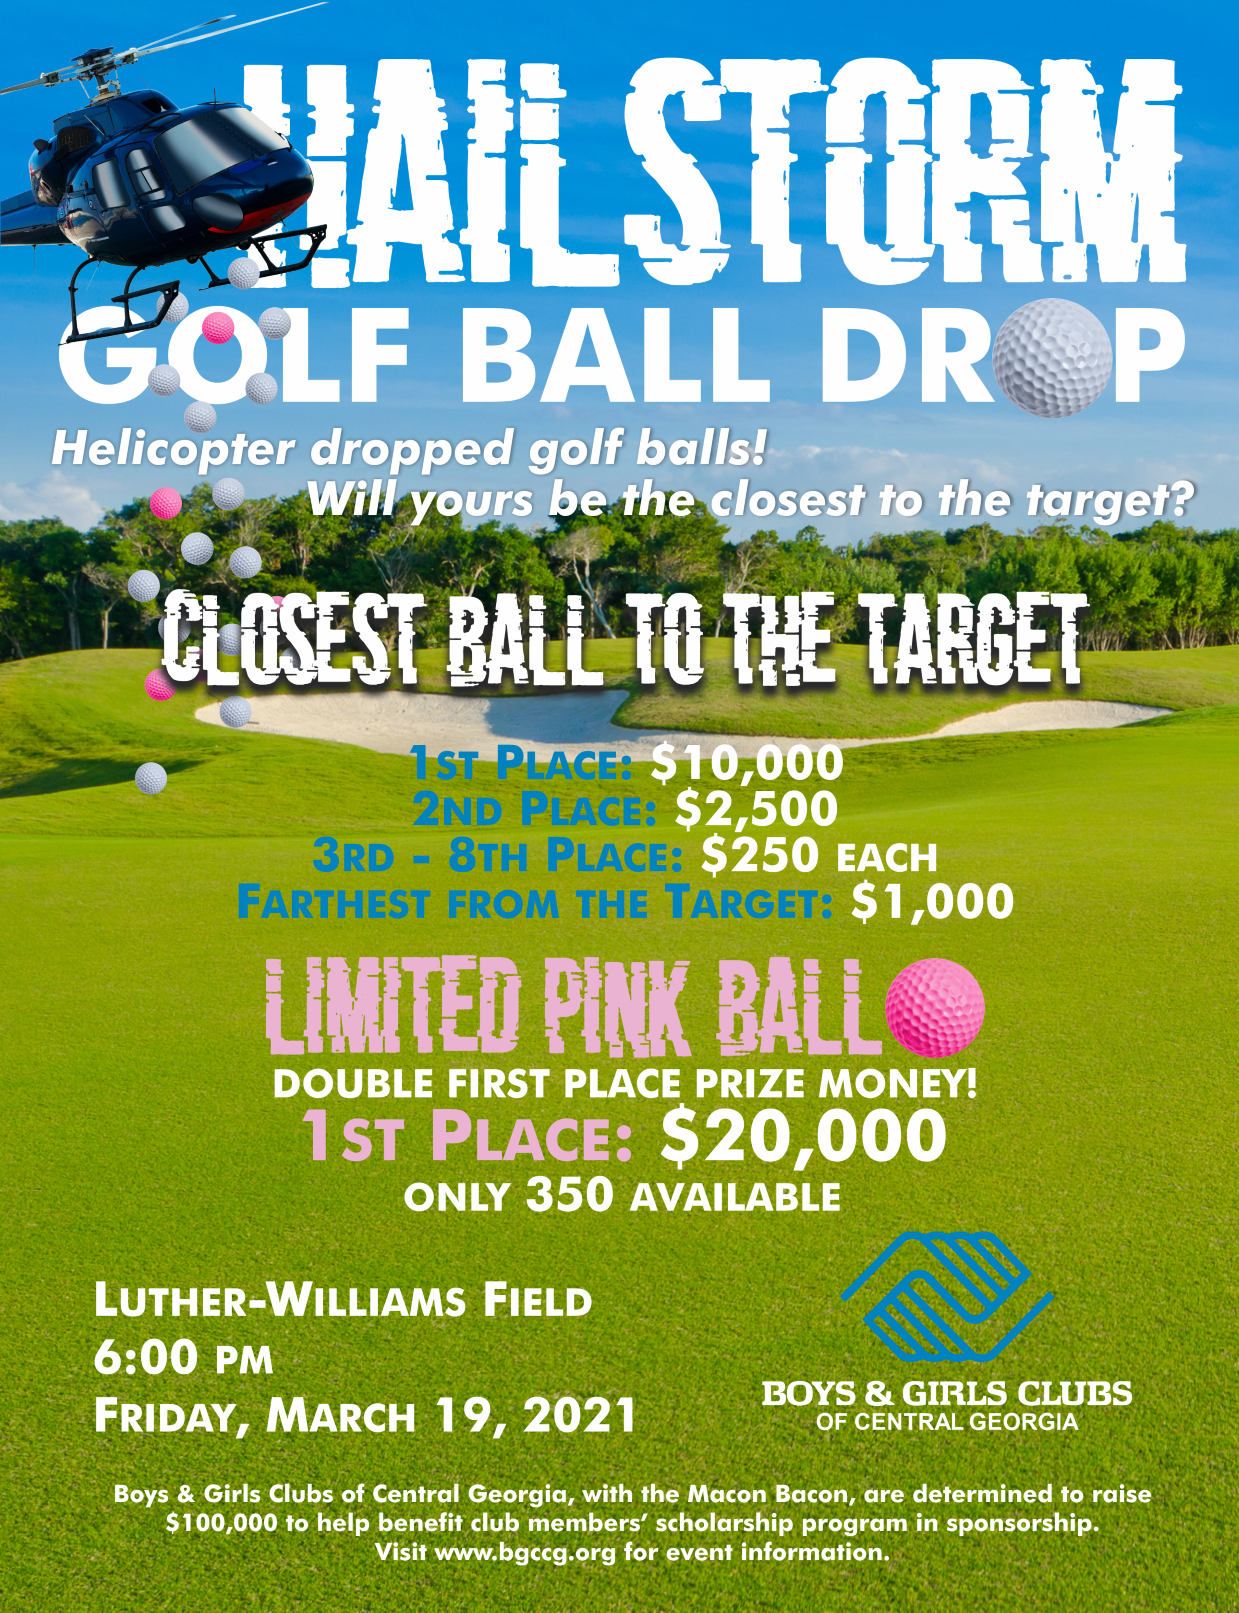 CC Hailstorm Golf Ball Drop